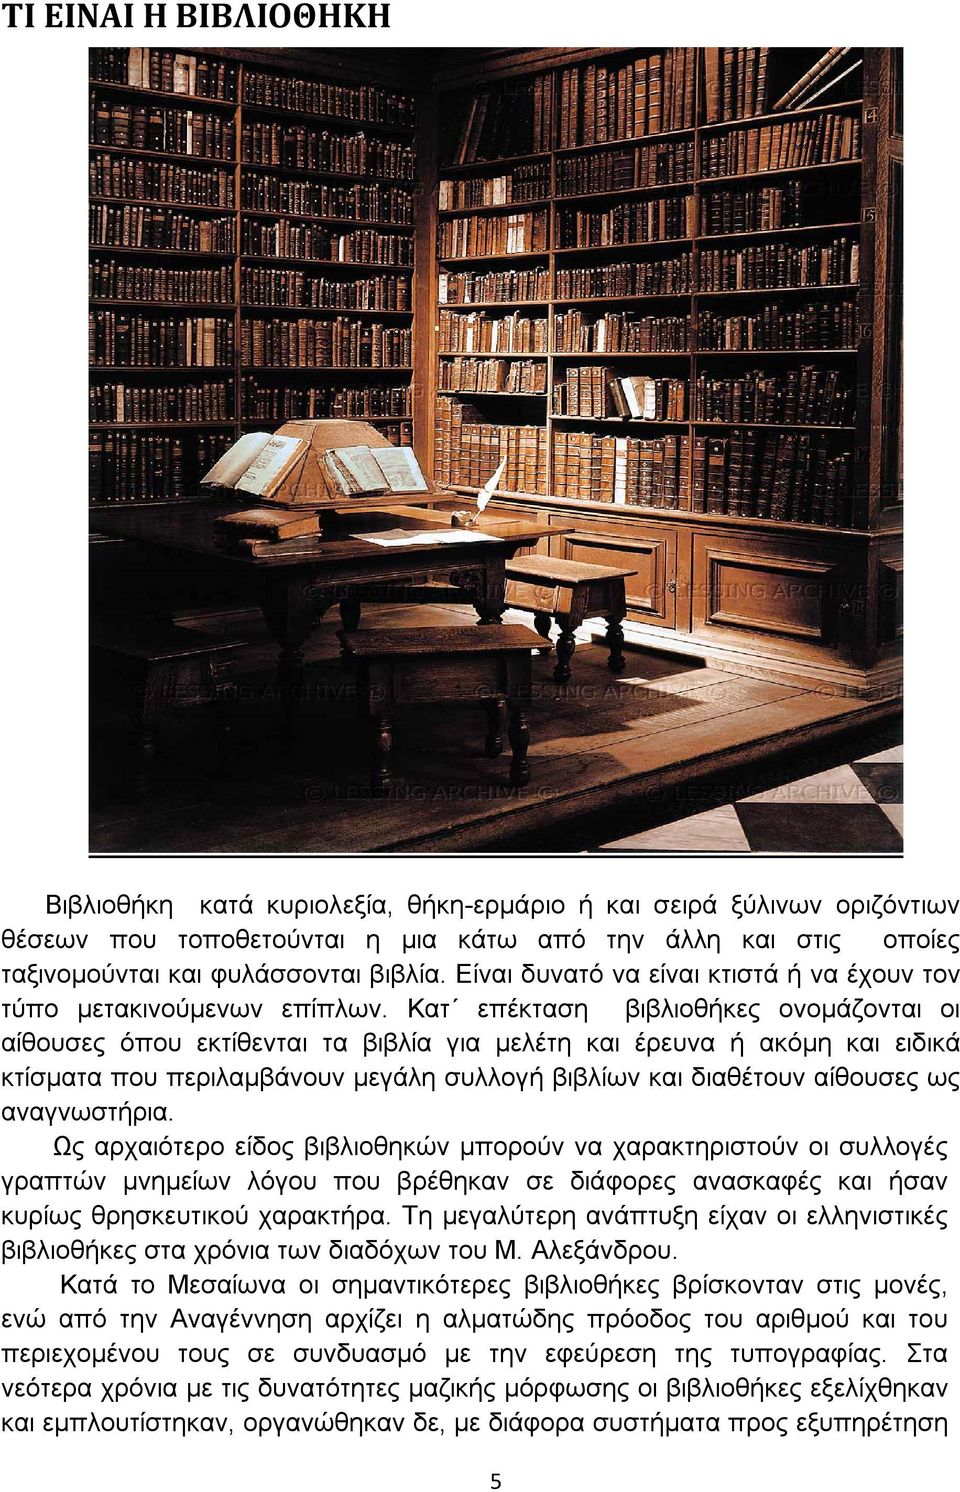 Κατ επέκταση βιβλιοθήκες ονομάζονται οι αίθουσες όπου εκτίθενται τα βιβλία για μελέτη και έρευνα ή ακόμη και ειδικά κτίσματα που περιλαμβάνουν μεγάλη συλλογή βιβλίων και διαθέτουν αίθουσες ως